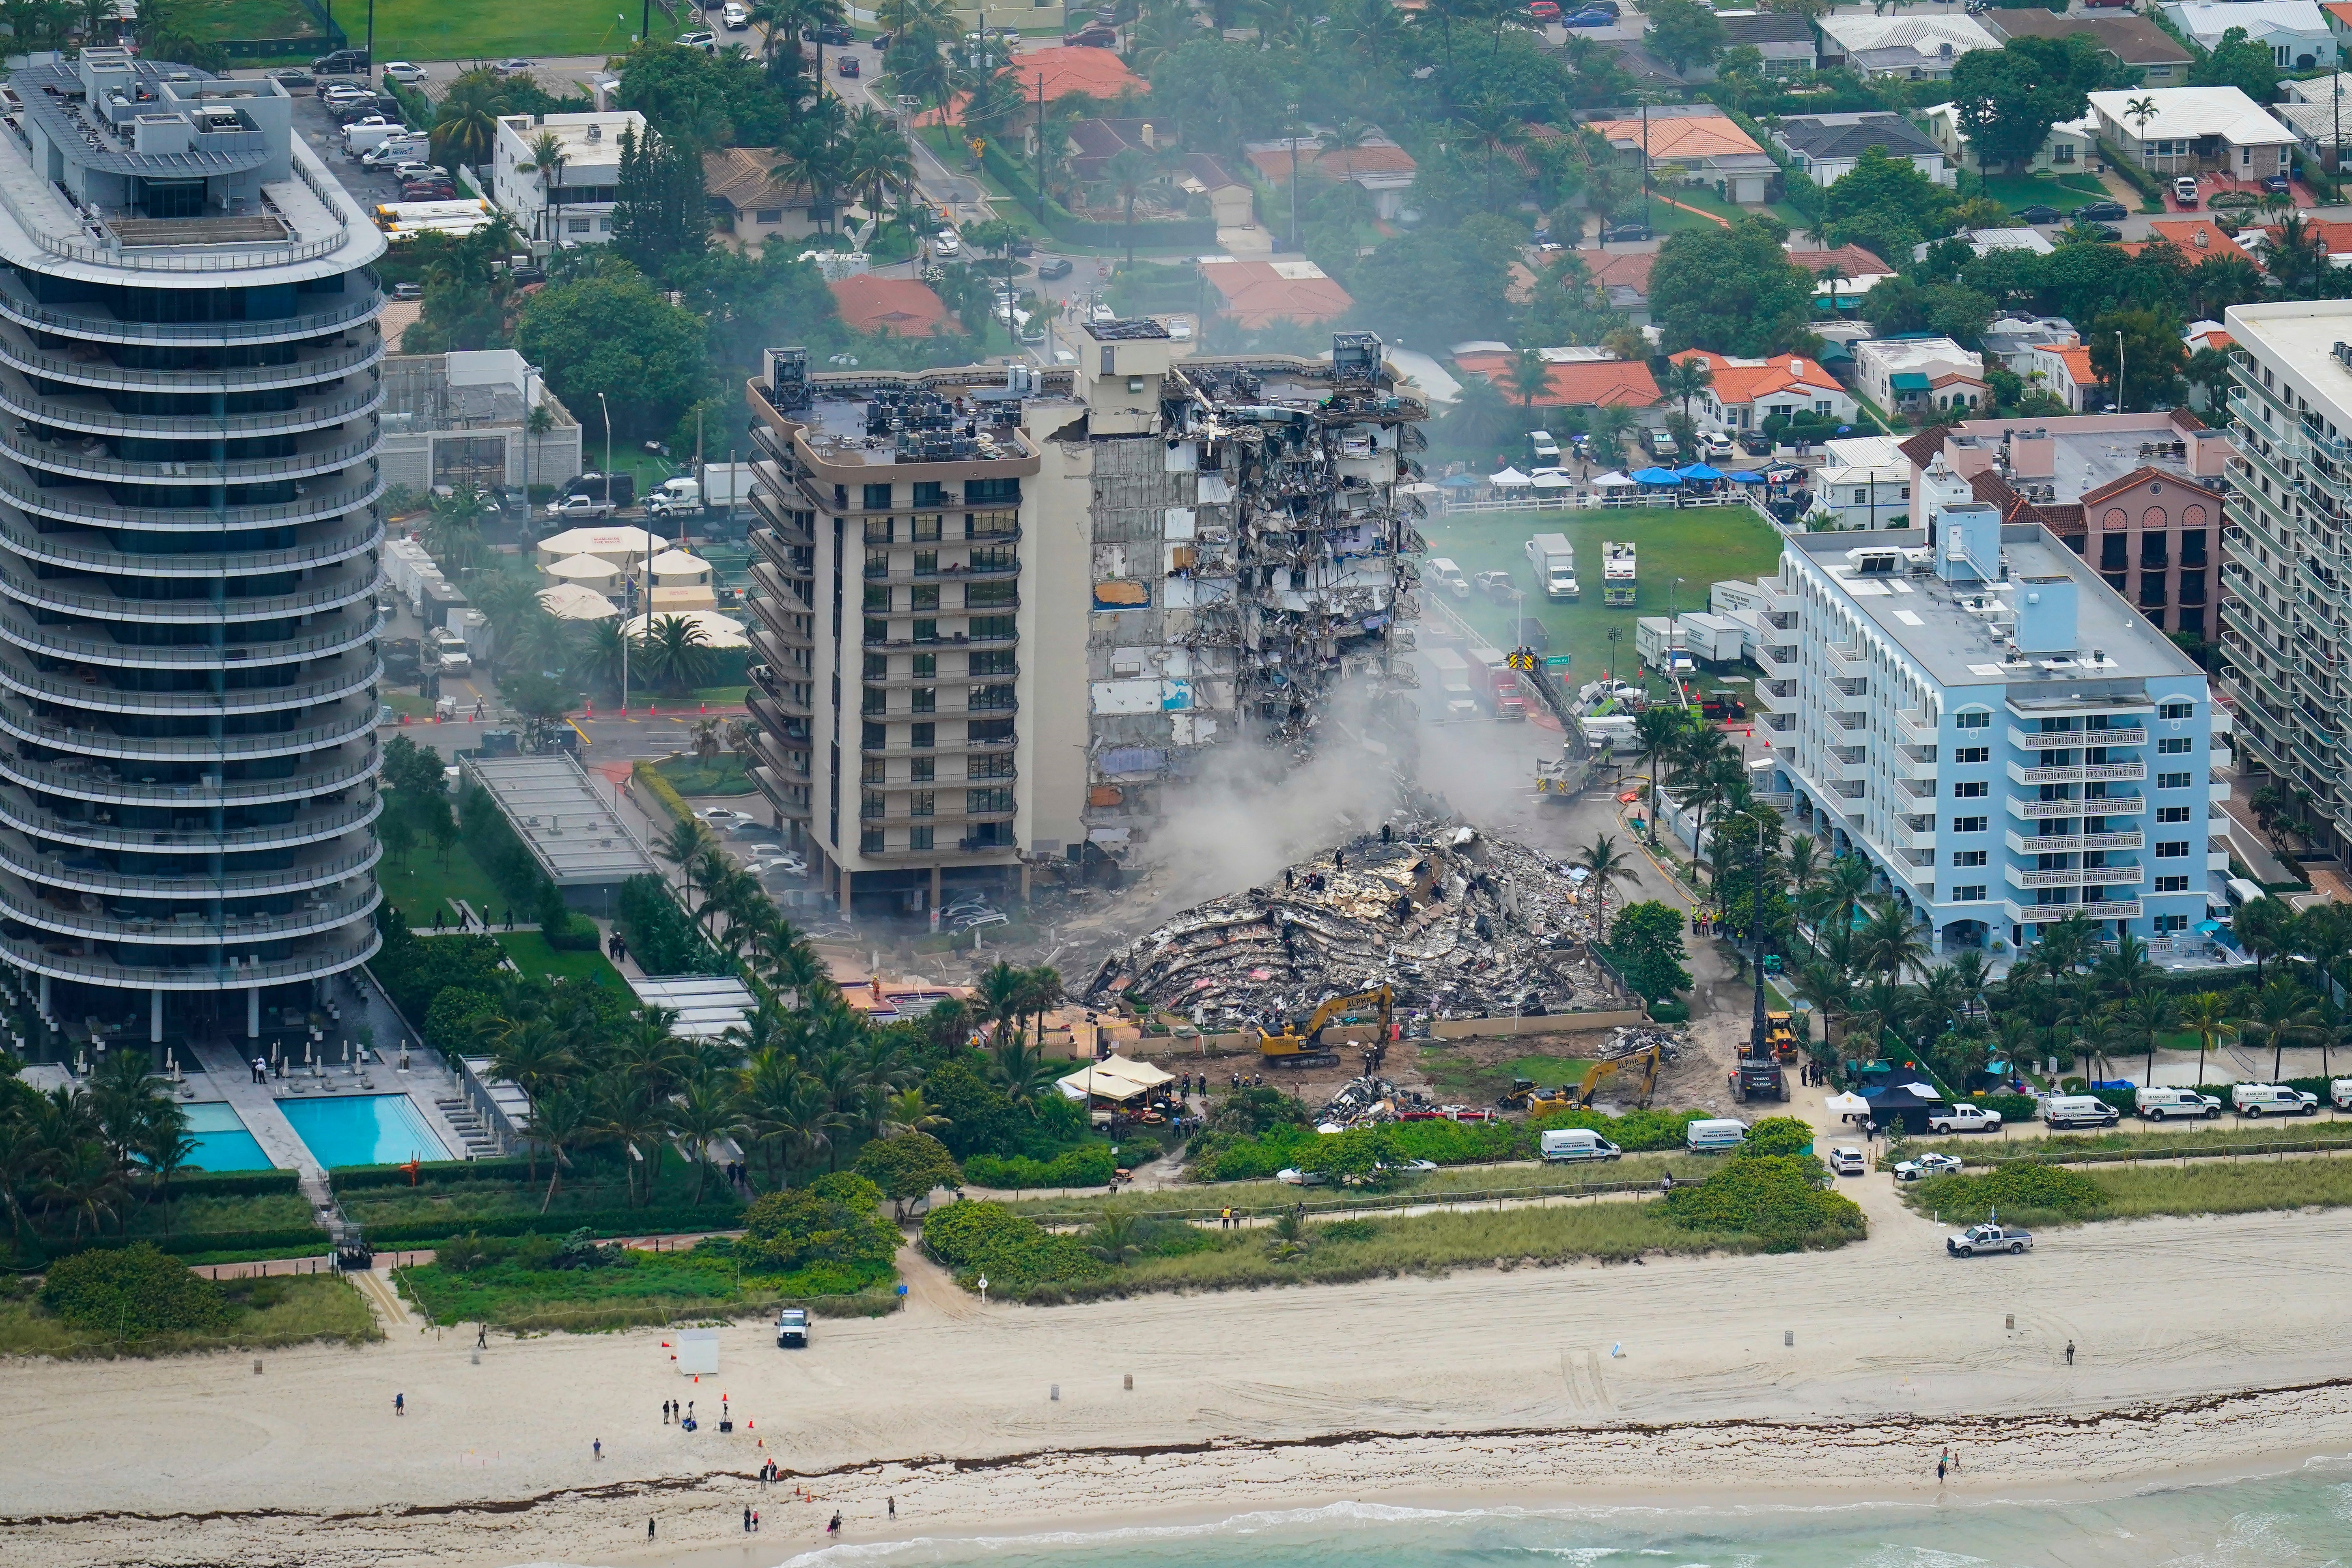 Building Collapse-Miami-Sister Condo